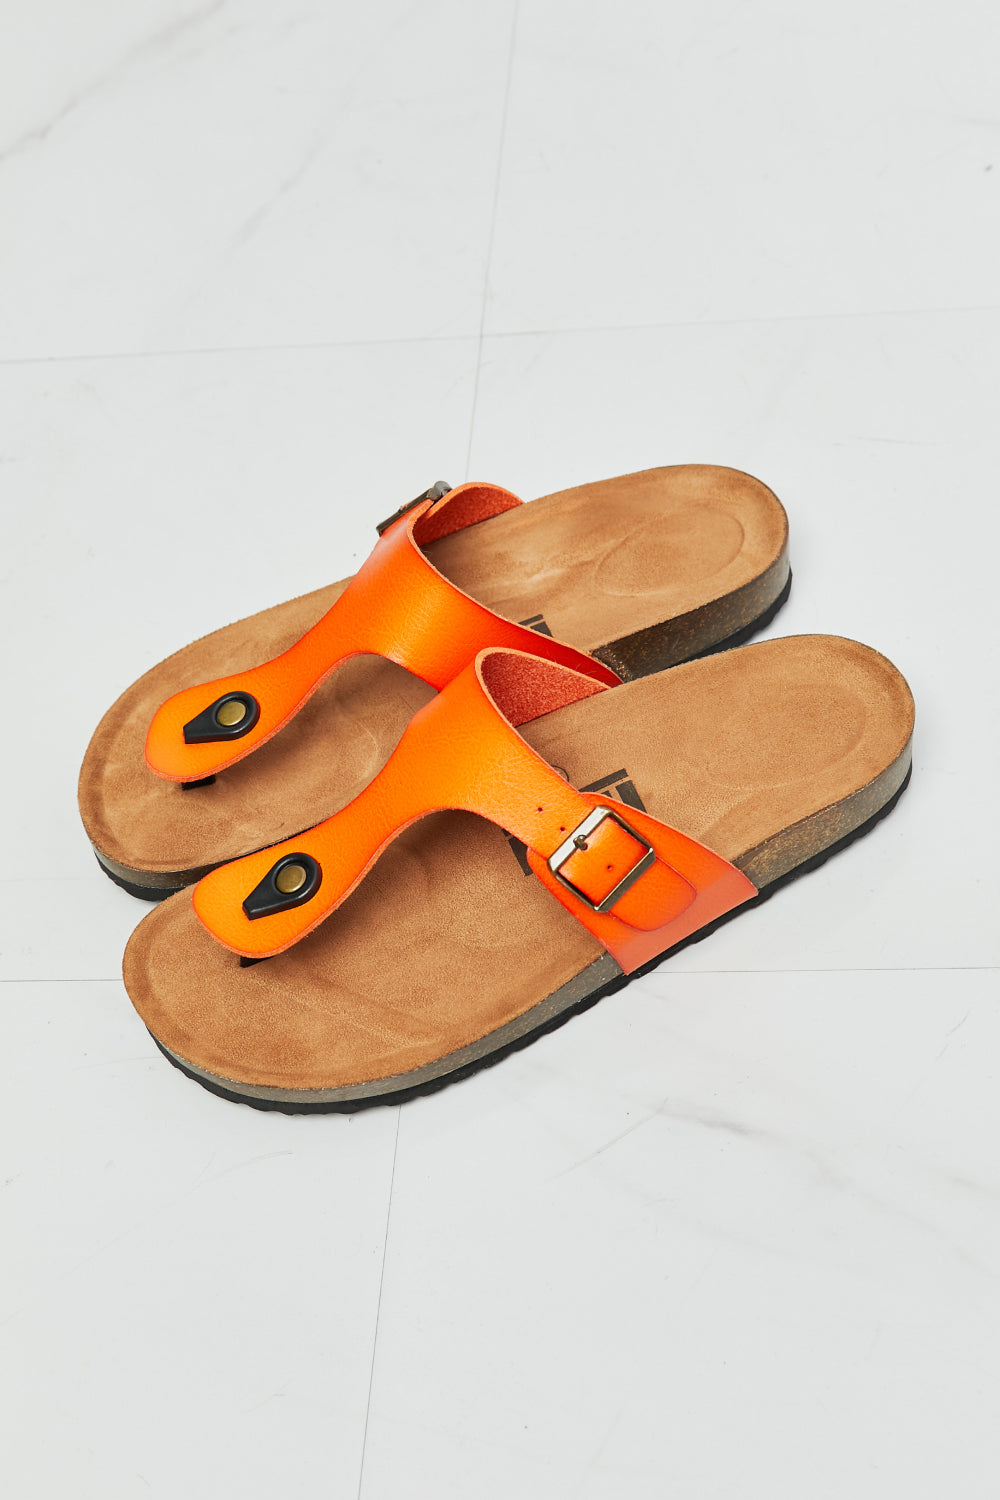 MMShoes Drift Away T-Strap Flip-Flop in Orange - BEAUTY COSMOTICS SHOP